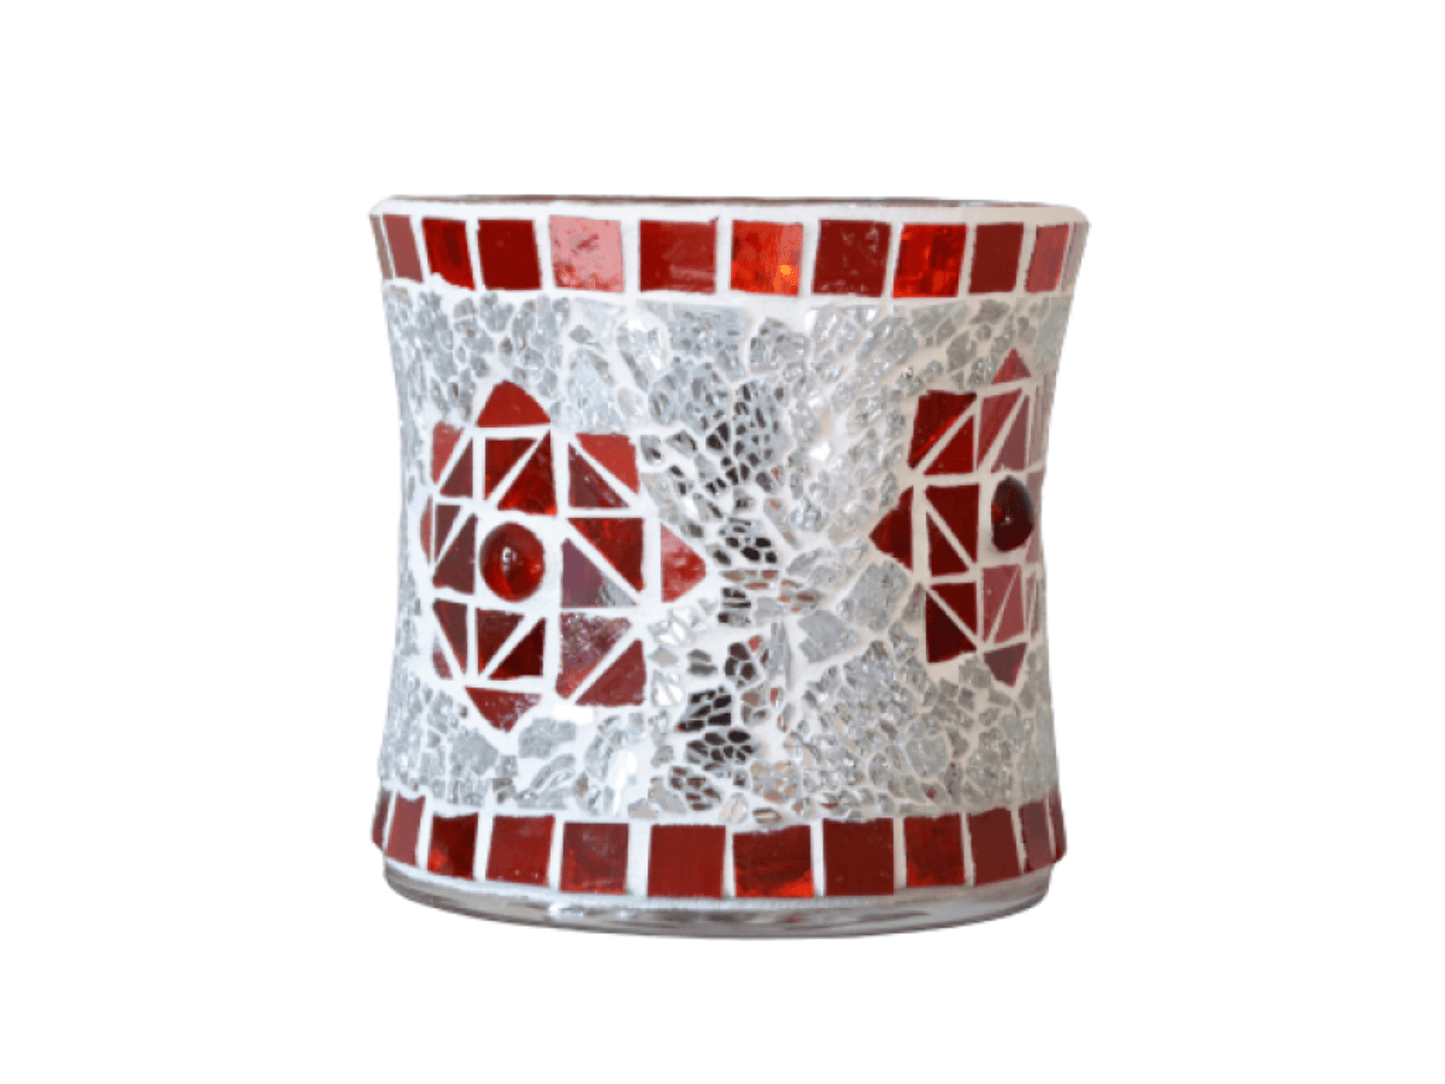 Mosaik Windlicht Stern rot silber in 2 Größen - Mosaikkasten Advent aus alt mach neu